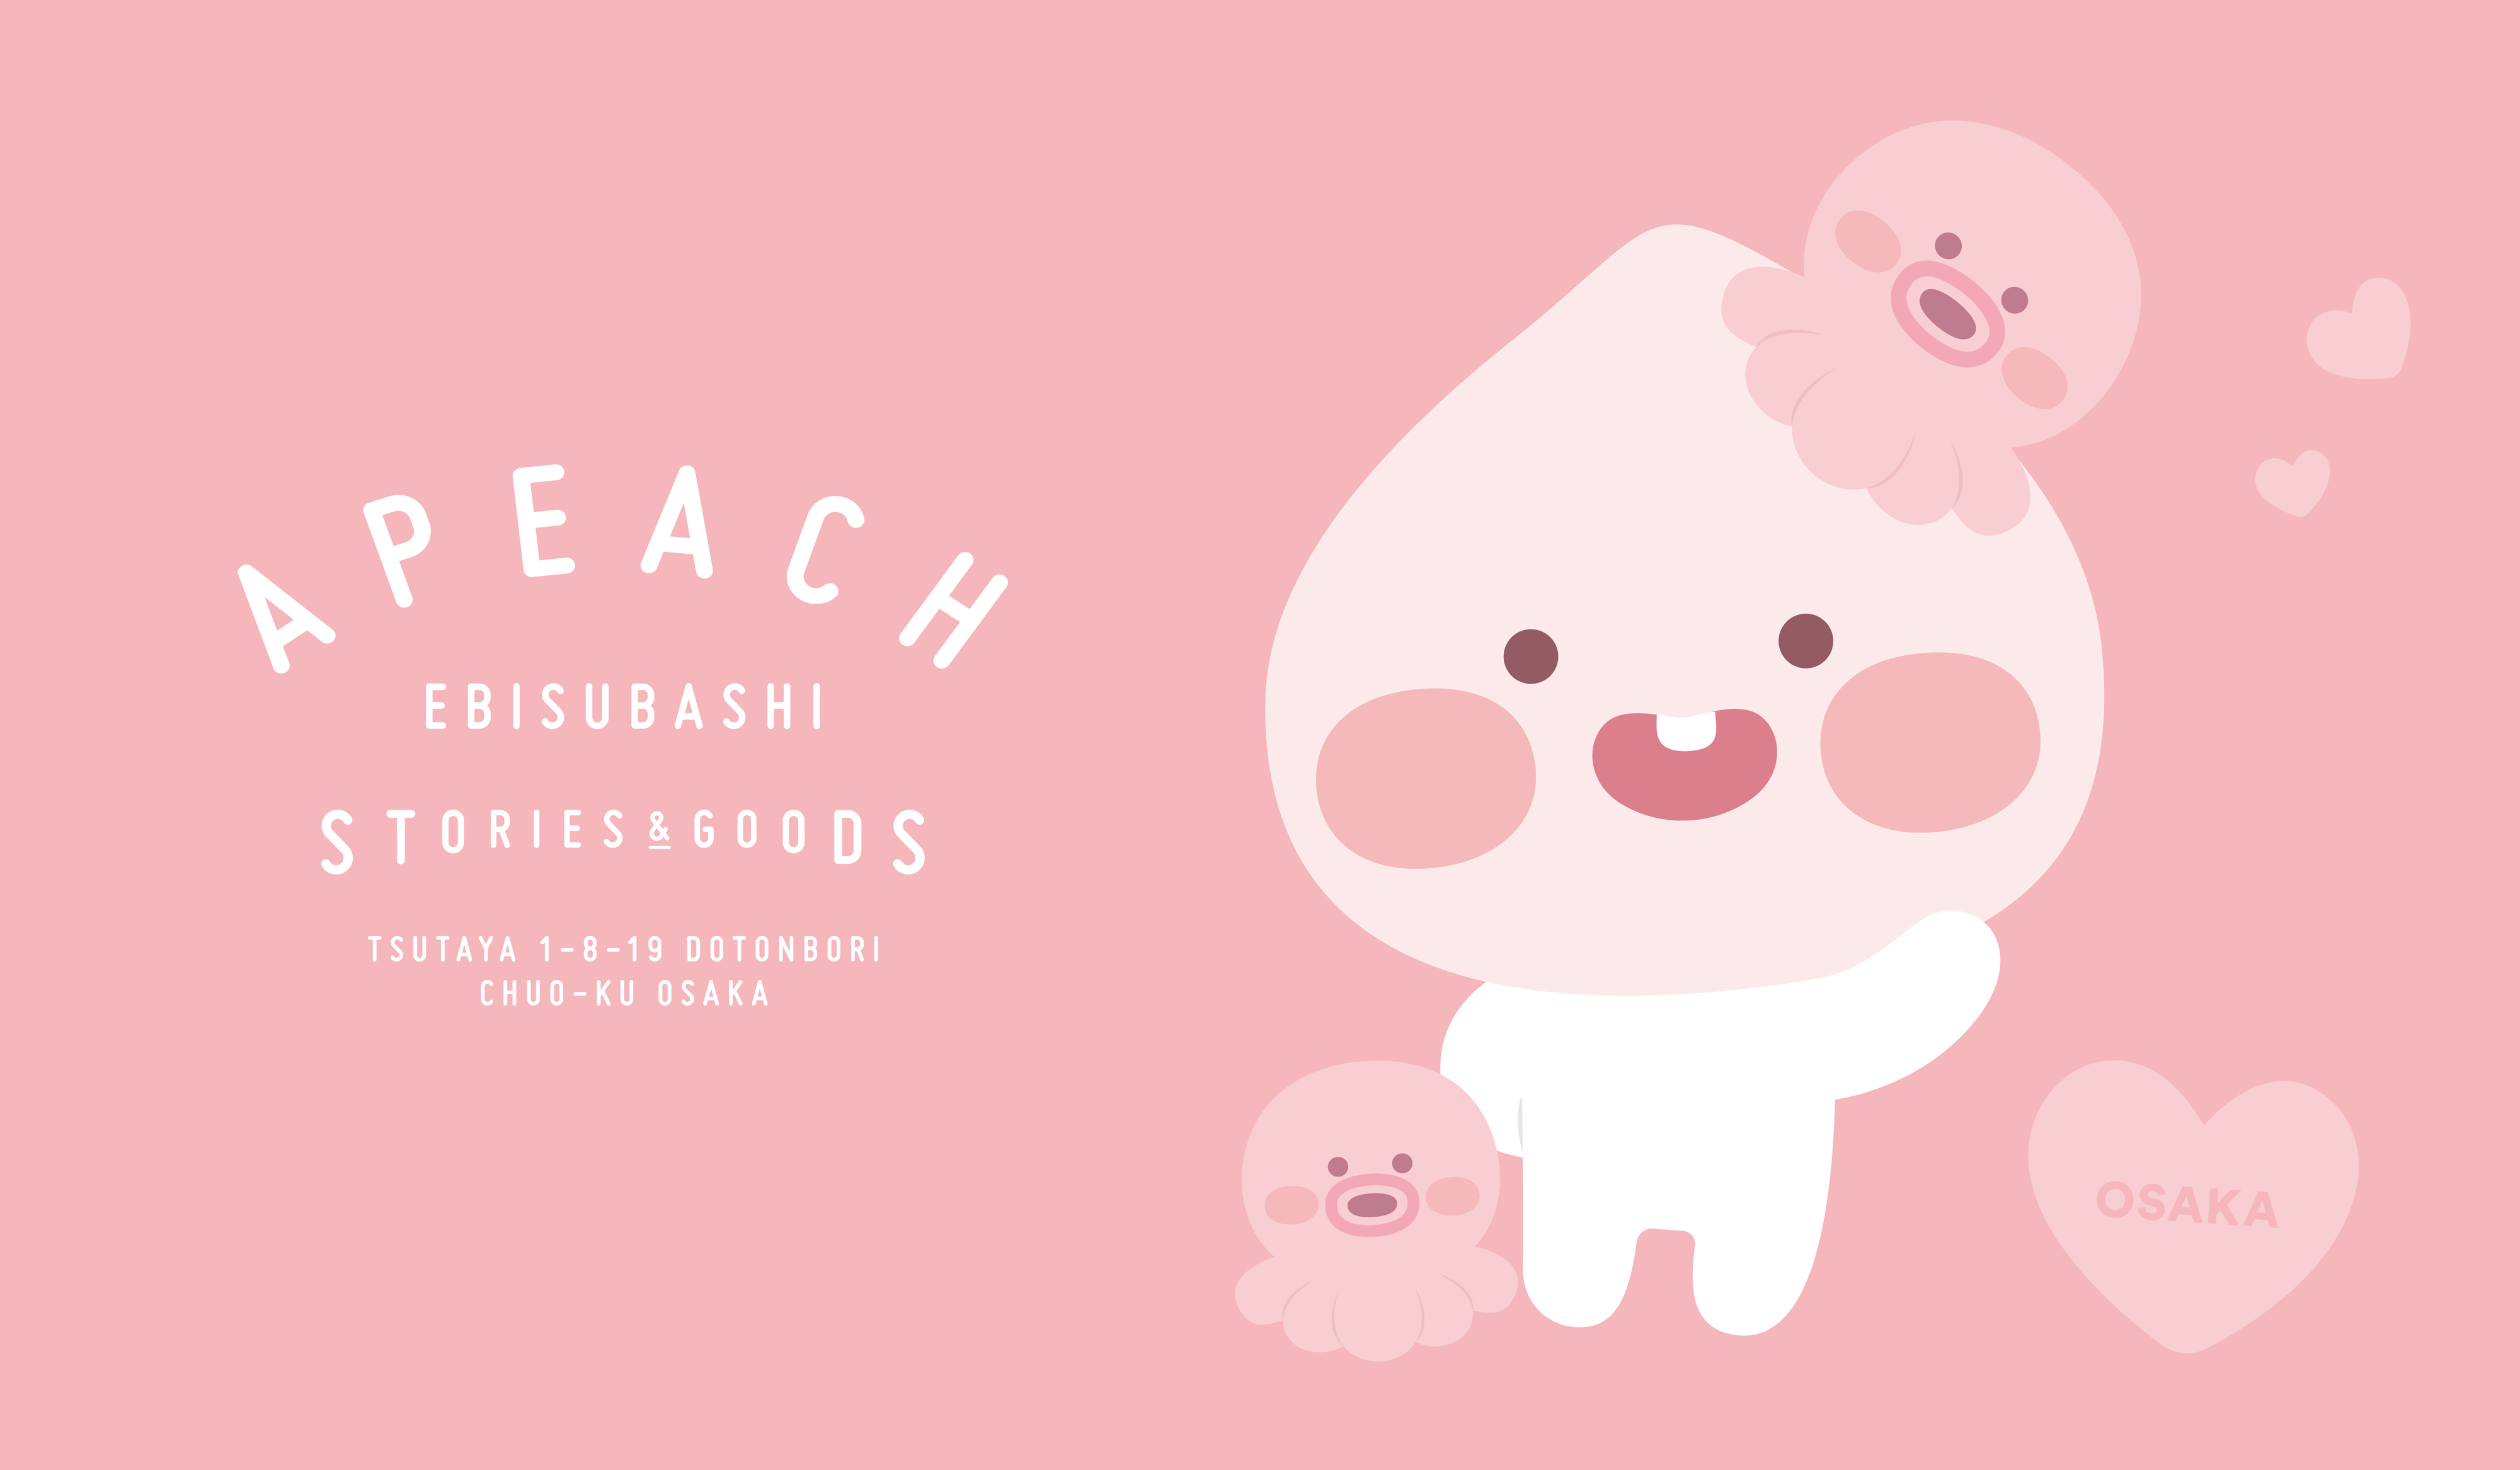 Tsutaya Ebisubashi内にて 大阪初出店のapeach Ebisubashiが6月29日からグランドオープンいたします 株式会社カカオ アイエックスジャパンのプレスリリース